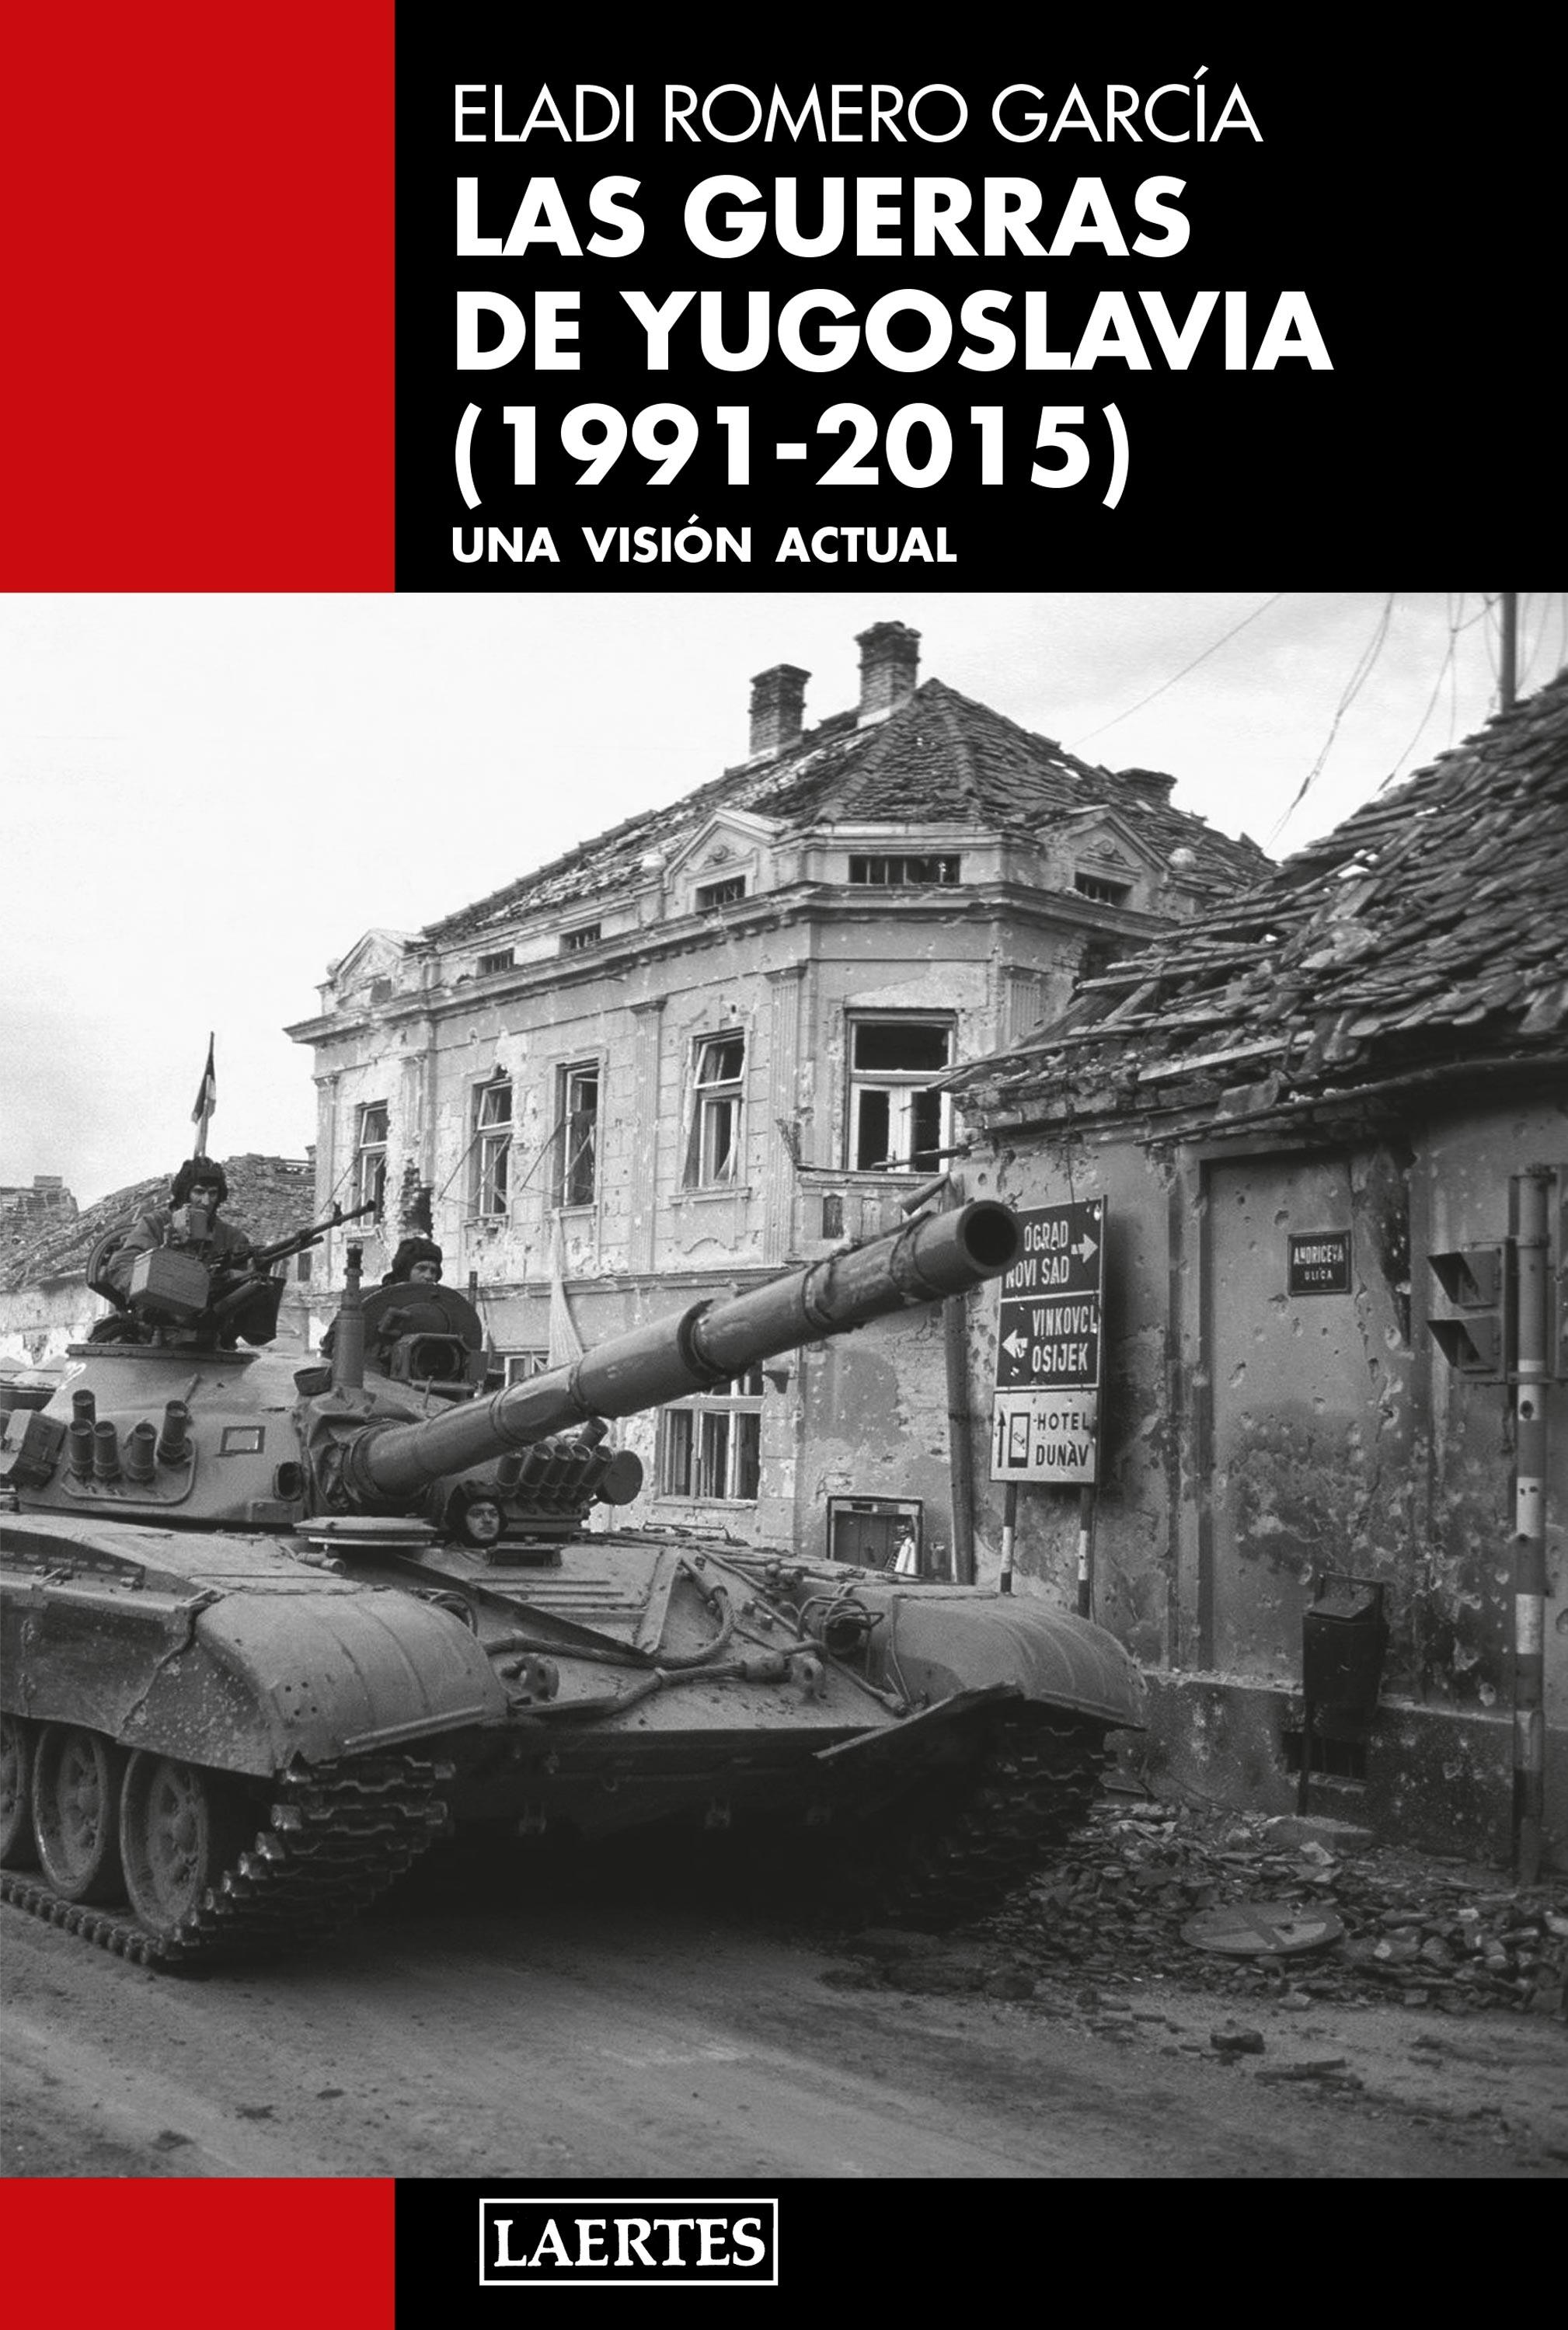 Guerras de Yugoslavia (1991-2015), Las "Una visión actual"